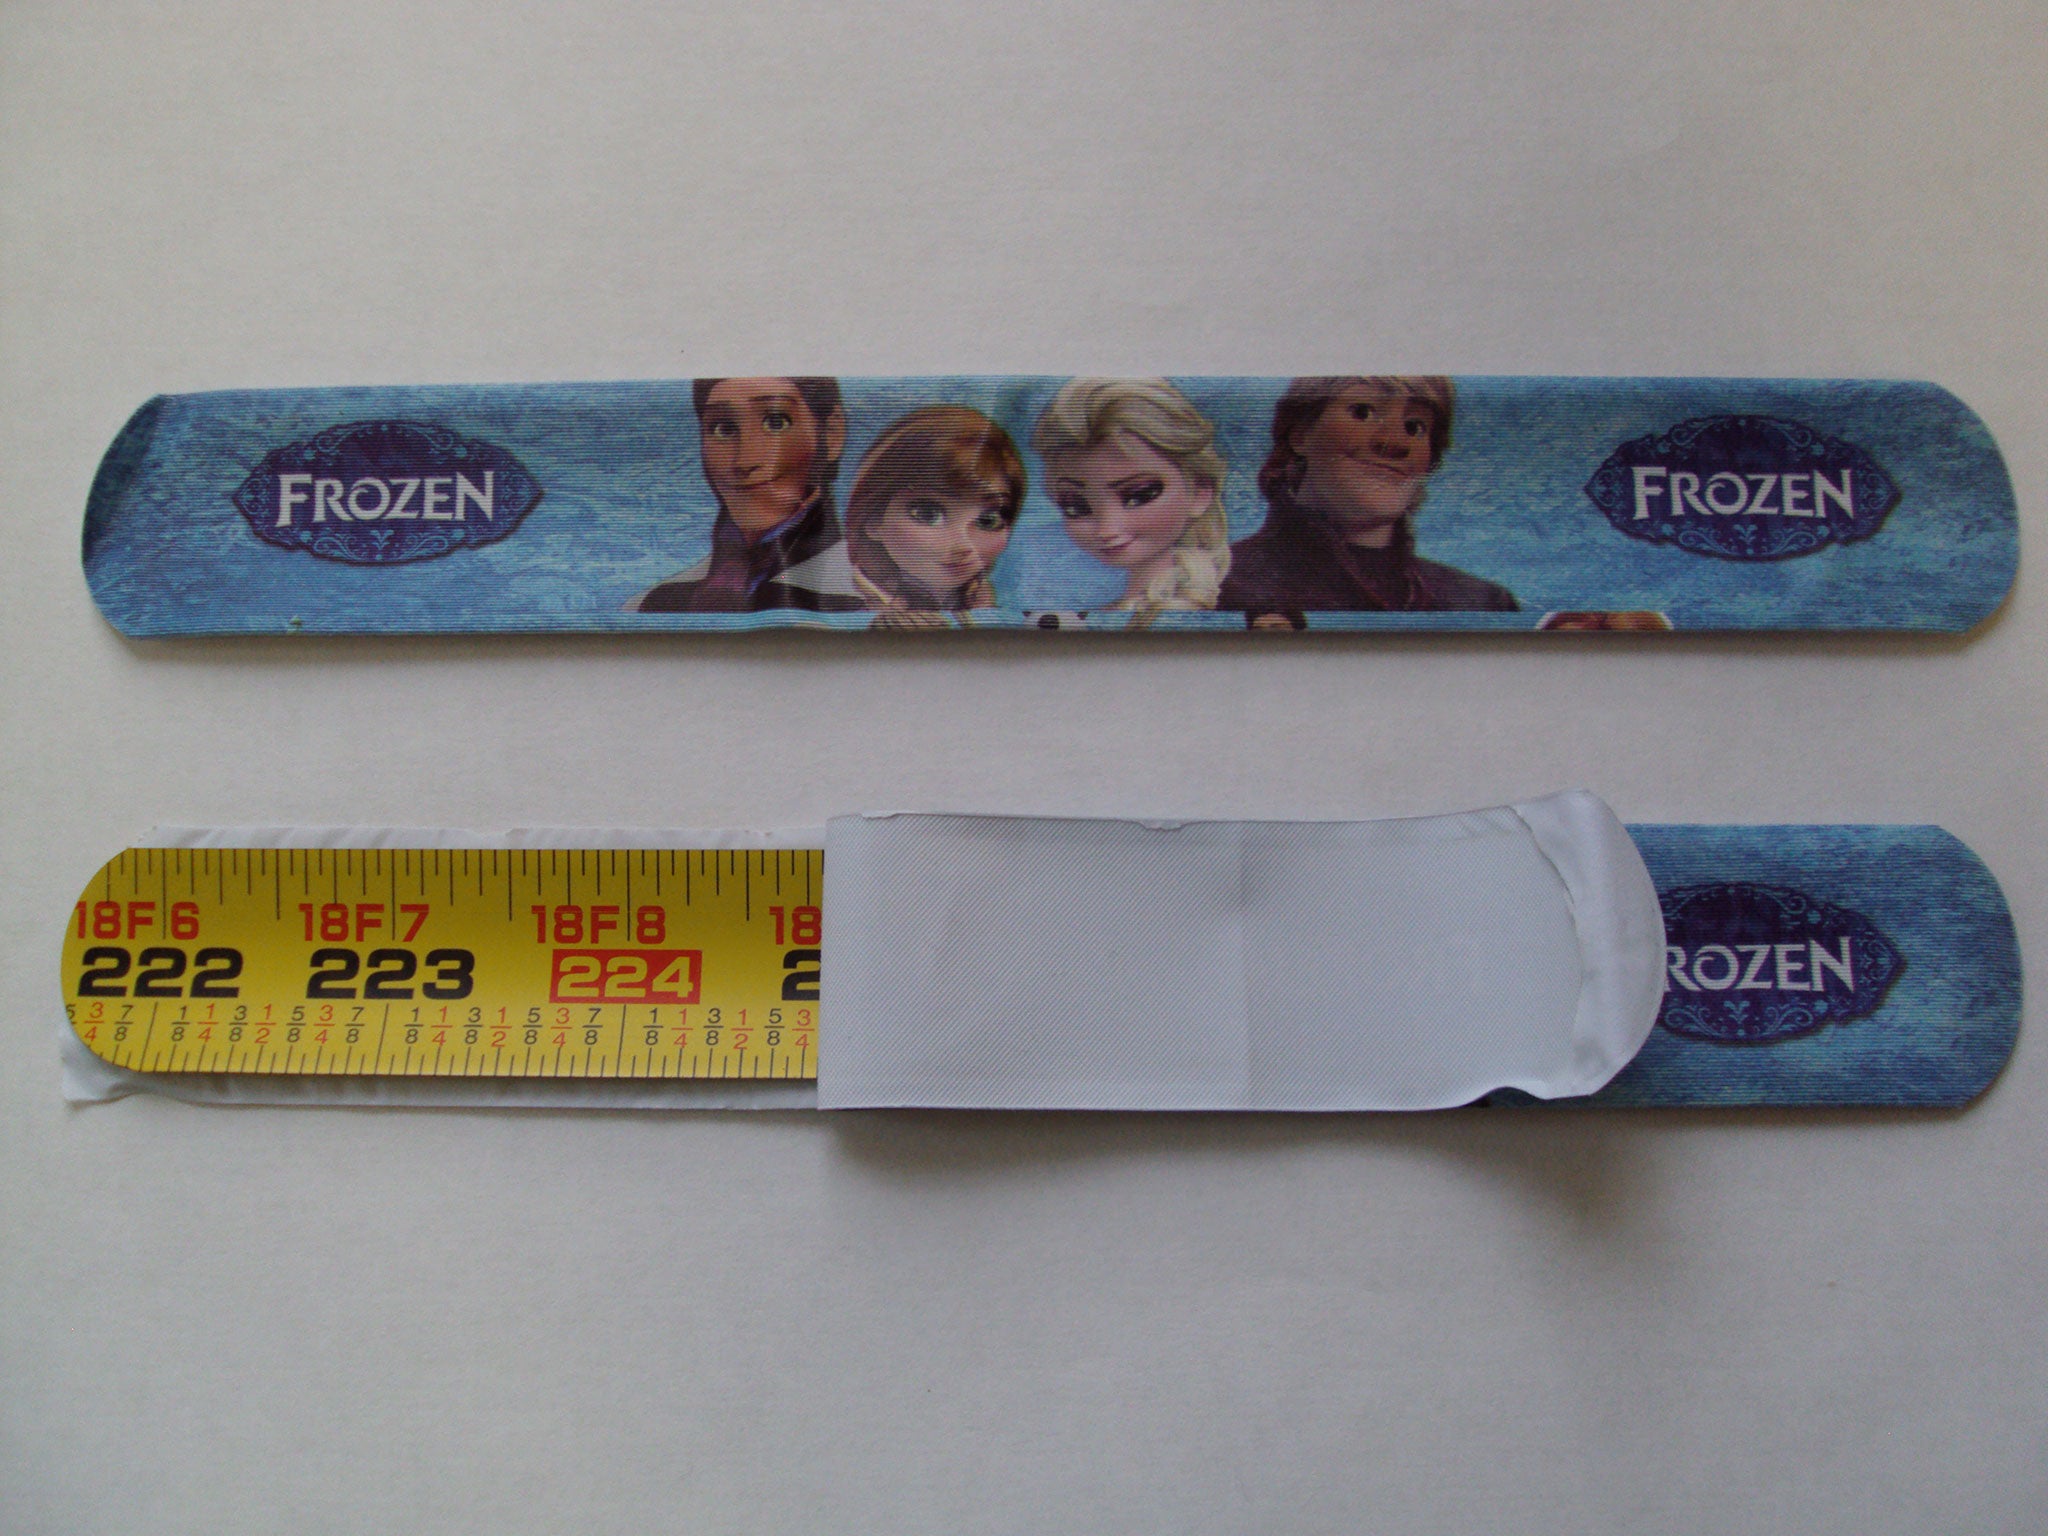 The counterfeit Frozen snap bracelets